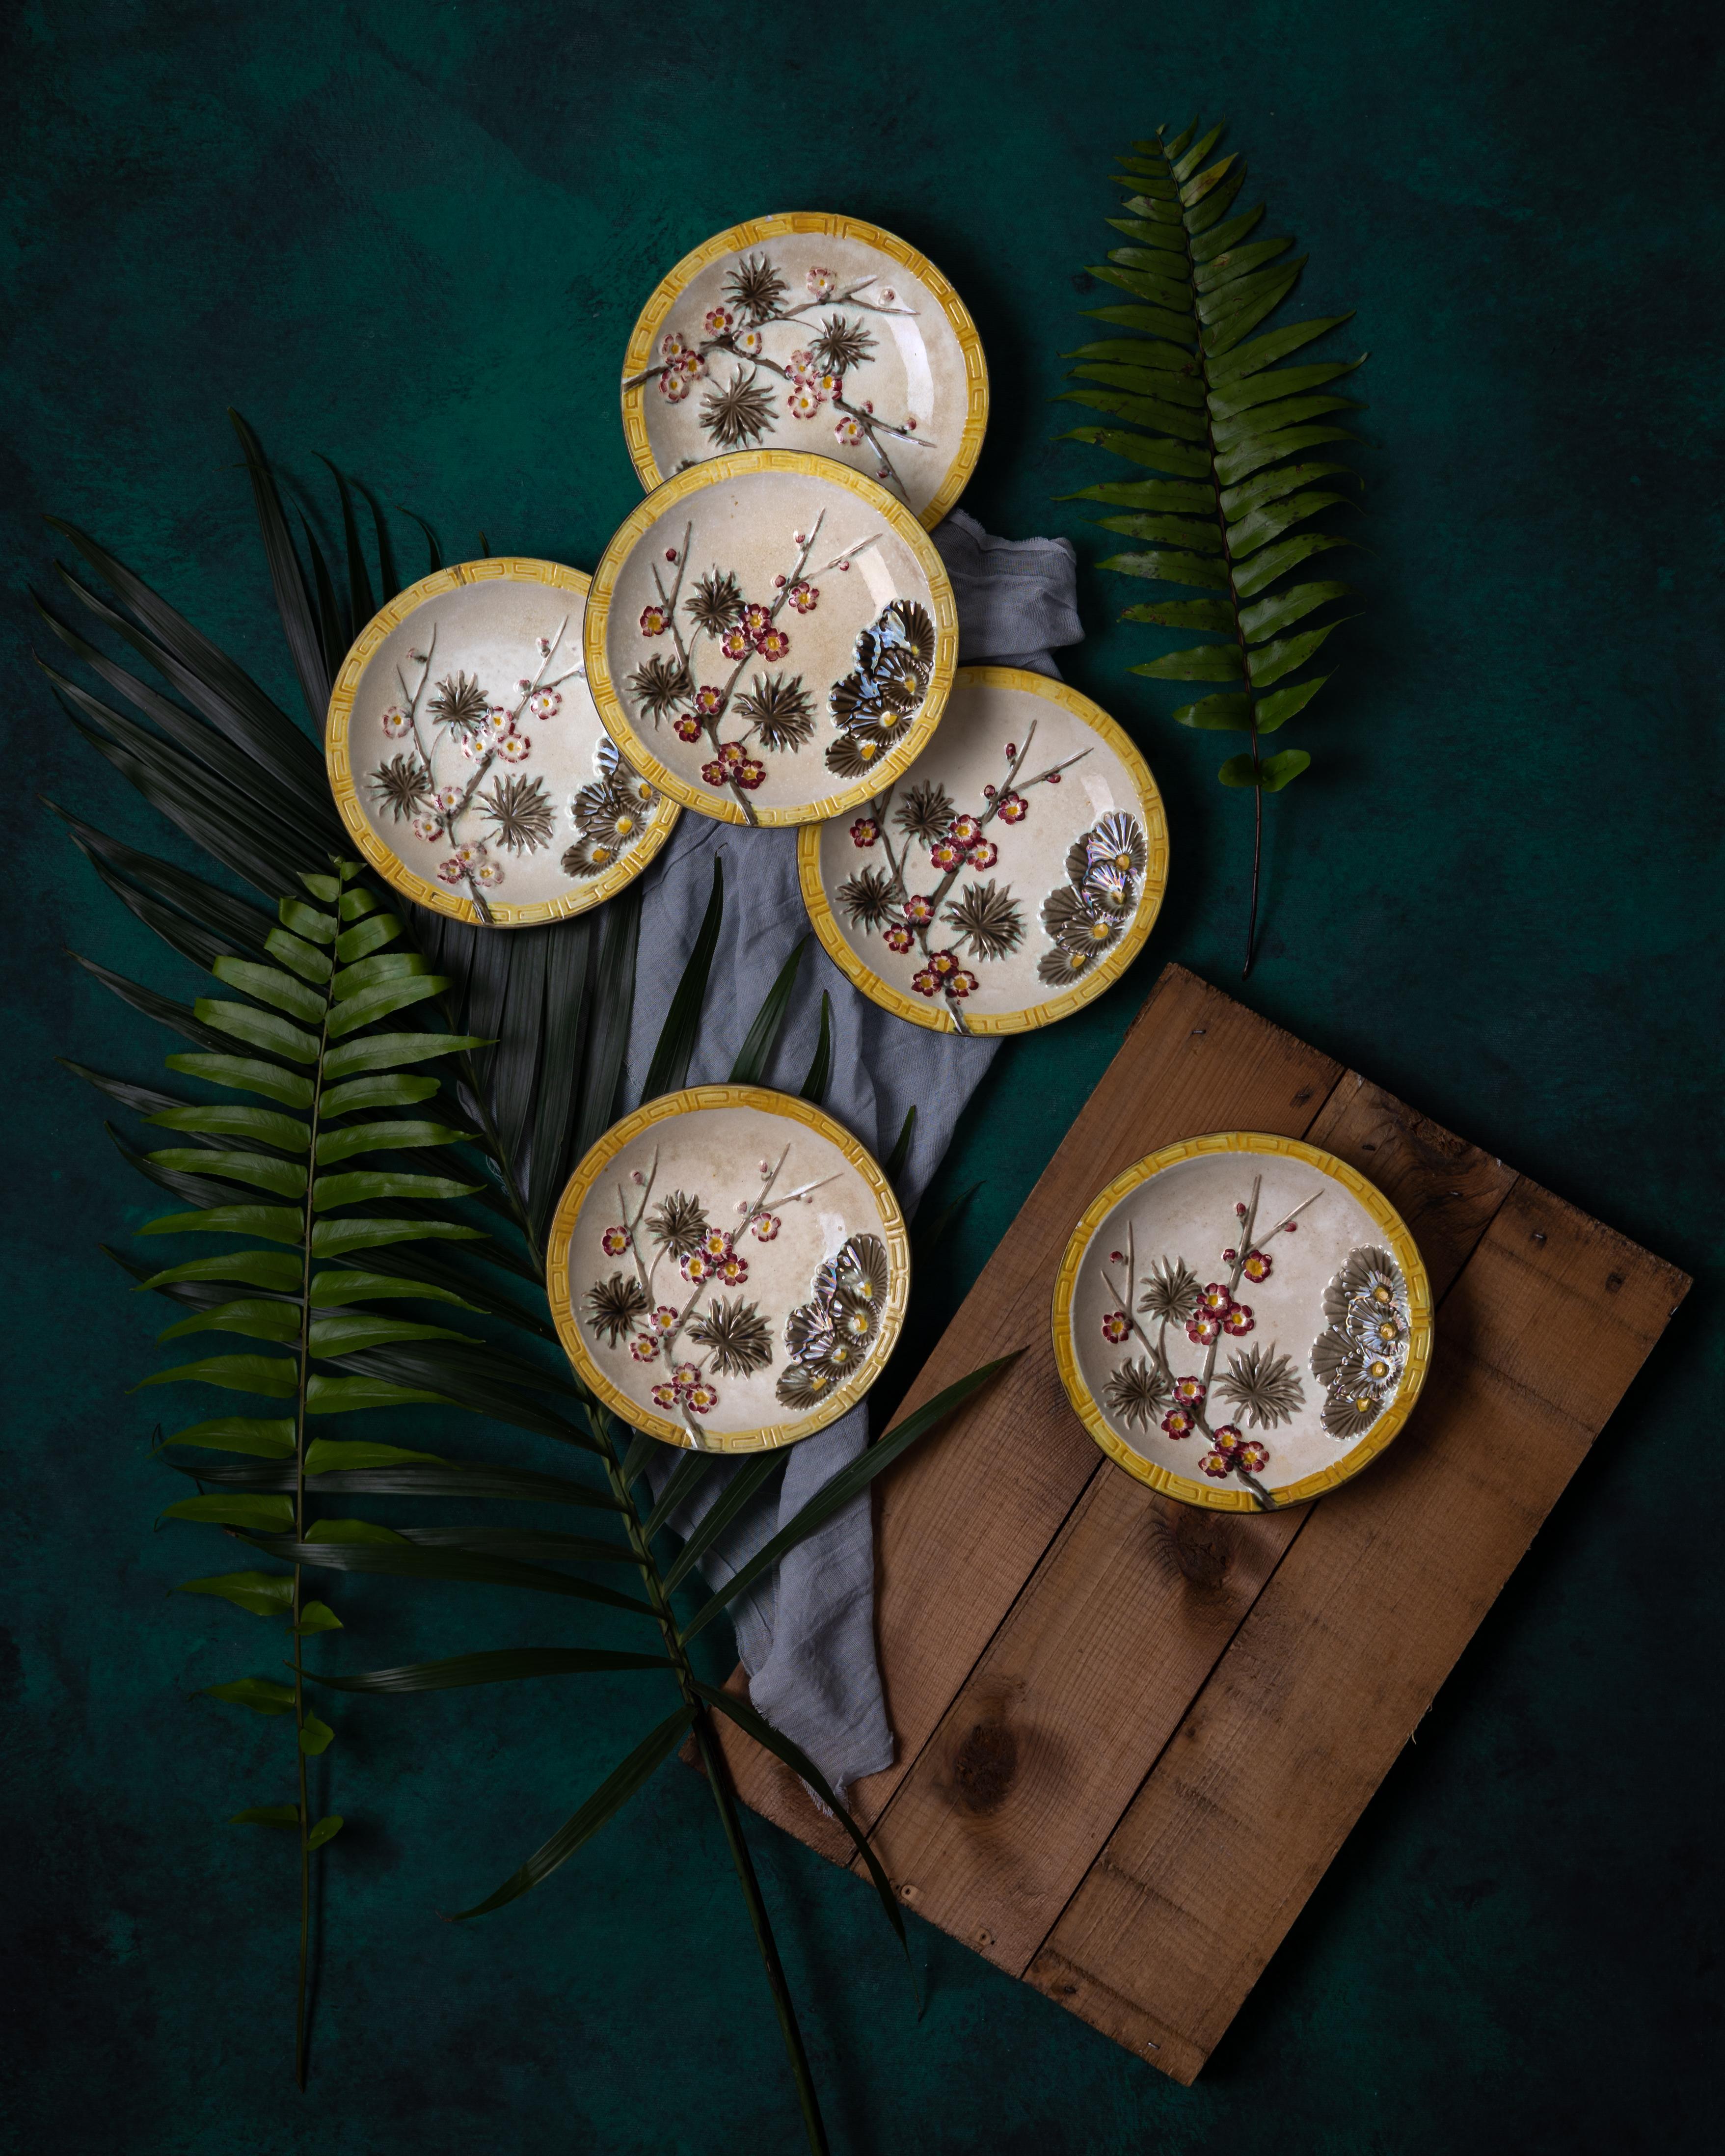 Sechs Wedgwood Majolika Argenta-Palette 'Lincoln' Dessertteller mit fein geformten kastanienbraunen Prunusblüten und dunkeltaupefarbenen Kiefernzweigen, umgeben von einer gelben Bordüre mit griechischem Schlüssel. Das Geschirr ist im Japonisme-Stil